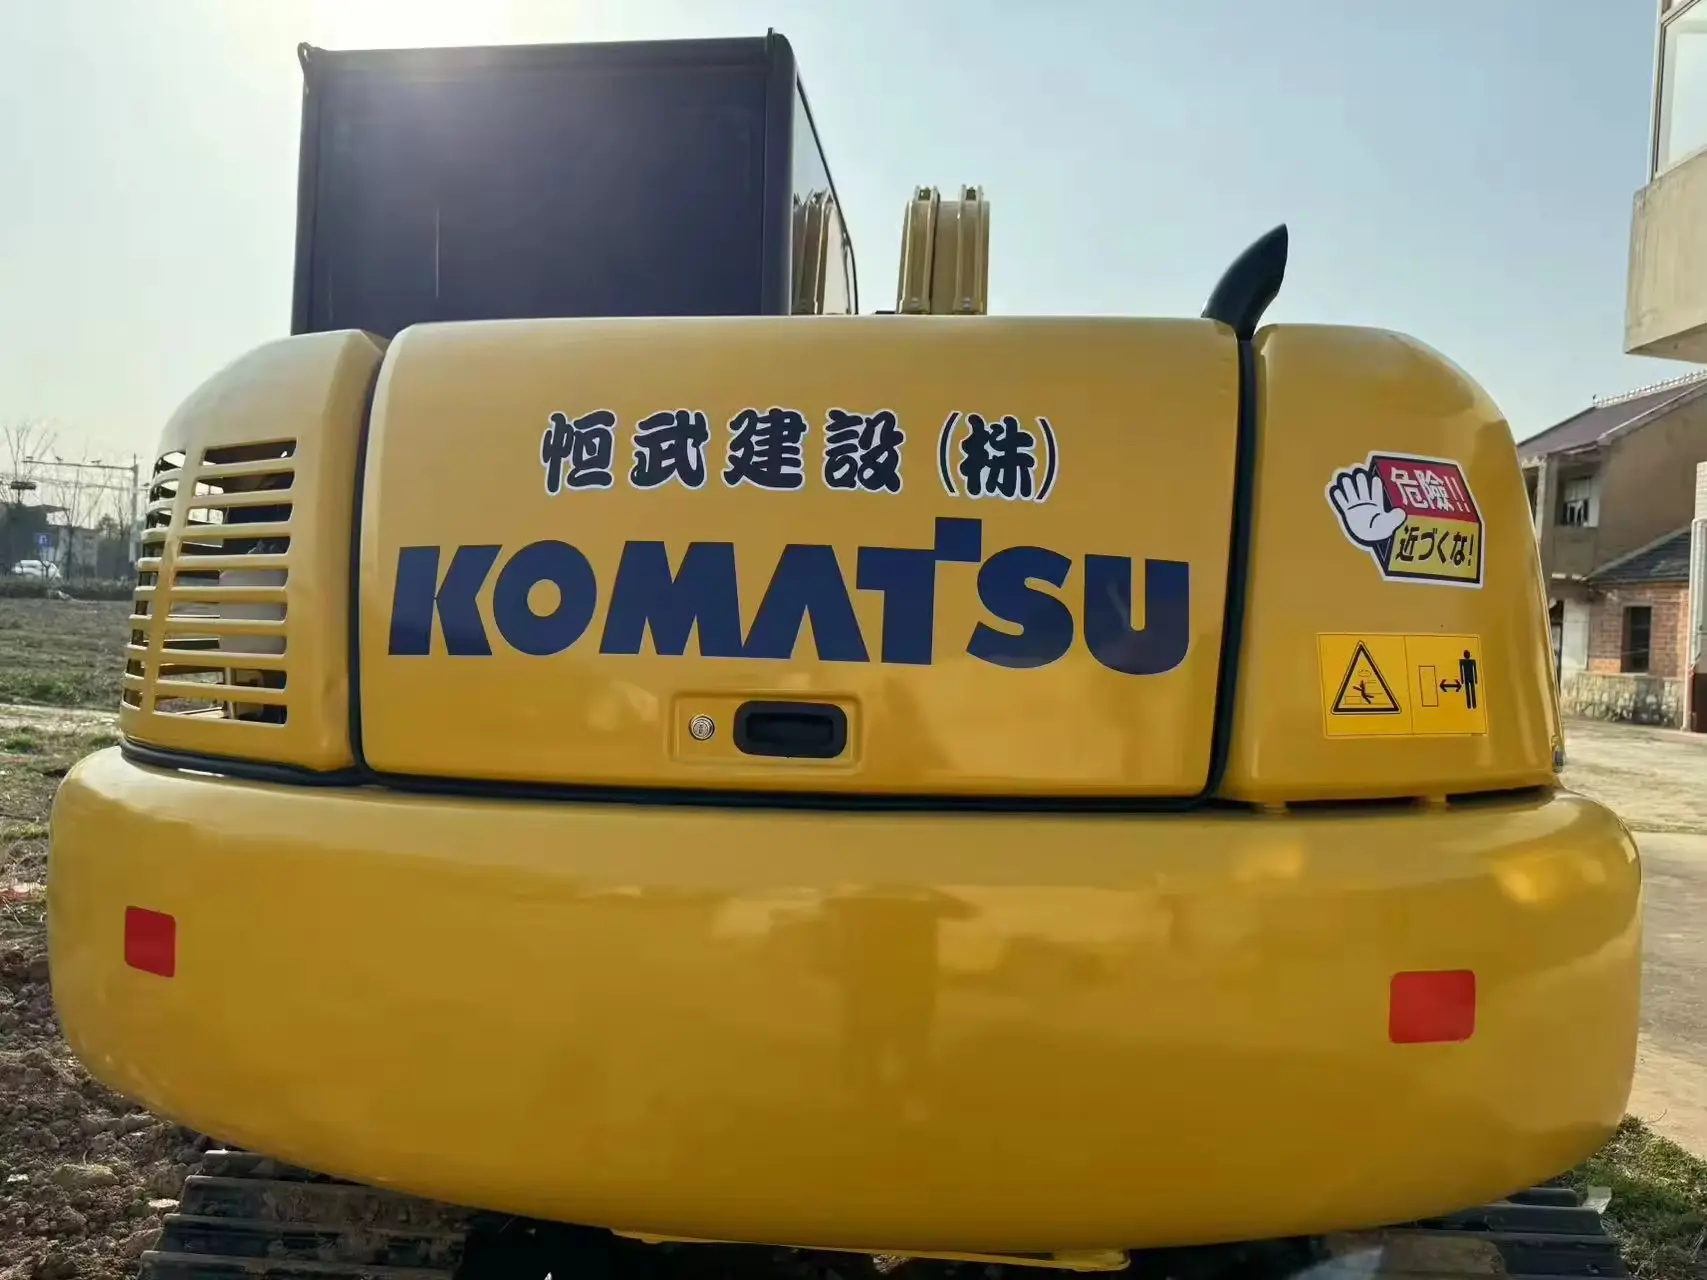 Gebruikt Japan Originele Komatsu PC160-7 Digger Komatsu PC160-7 16 Ton Hydraulische Rupsgraafmachines In Voorraad Te Koop